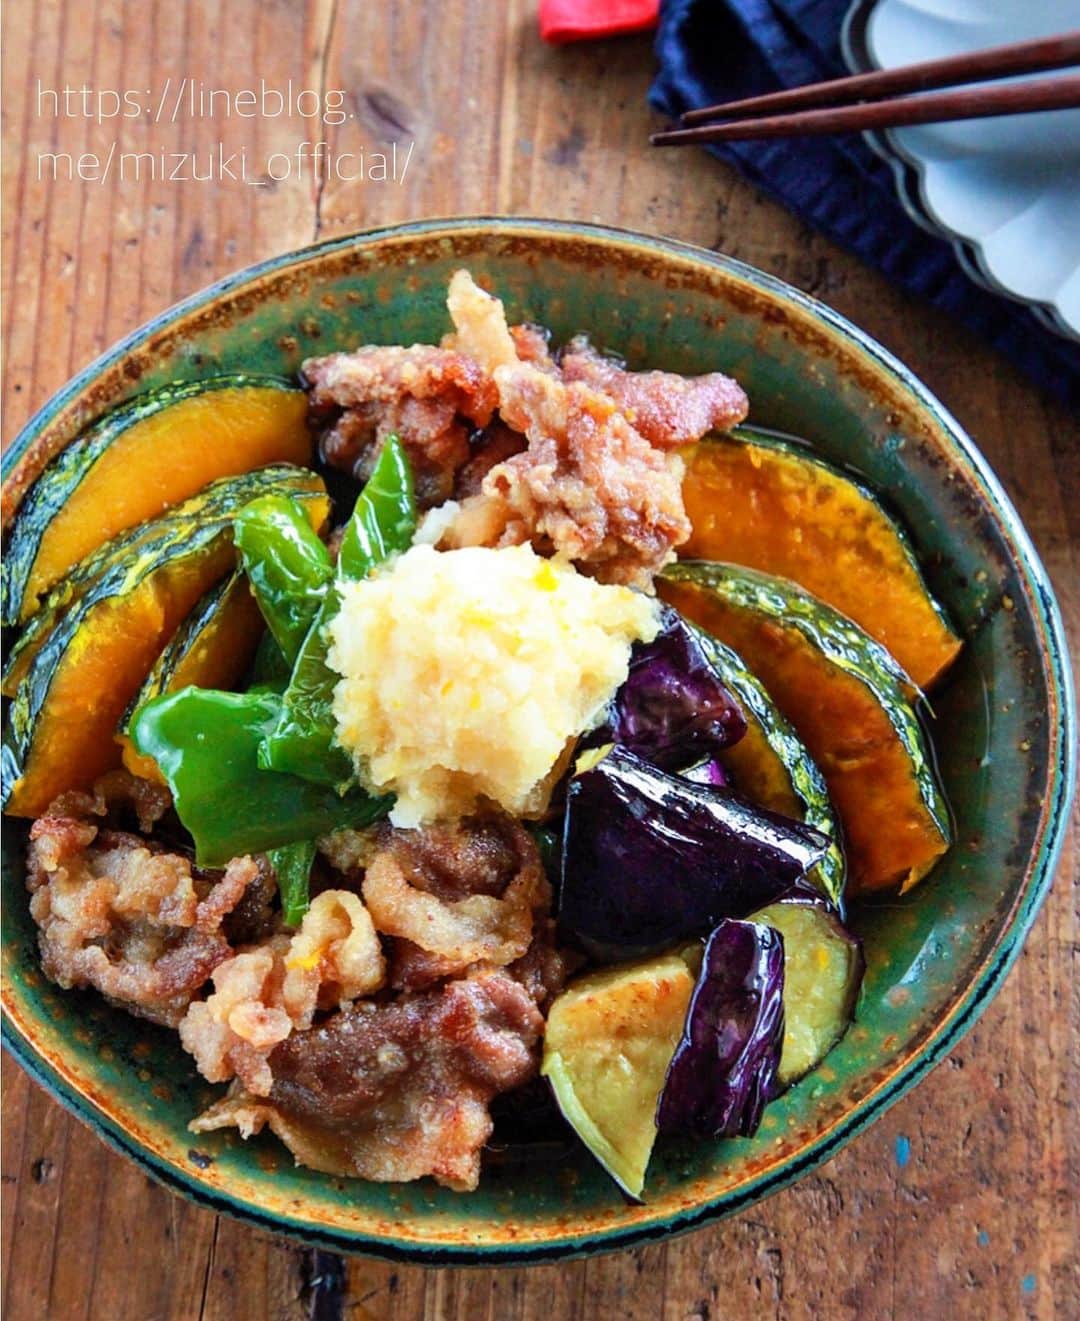 Mizuki【料理ブロガー・簡単レシピ】さんのインスタグラム写真 - (Mizuki【料理ブロガー・簡単レシピ】Instagram)「・﻿ 【レシピ】ーーーーーーーーーー﻿ ♡豚肉と夏野菜の焼きびたし♡﻿ ーーーーーーーーーーーーーーー﻿ ﻿ ﻿ ﻿ おはようございます(*^^*)﻿ ﻿ 今日ご紹介させていただくのは﻿ 豚肉と夏野菜の焼きびたし♩﻿ お肉も野菜も一度にたっぷり食べられる﻿ 夏の大満足おかずです(*´艸`)﻿ ﻿ 作り方は超簡単♡﻿ 全部揚げ焼きにして浸けるだけ！﻿ 味付けはめんつゆで失敗なし♩﻿ 作り立ても冷やしても美味しいので﻿ 作り置きにもぴったりですよ〜♡﻿ ﻿ ＊今回のように複数種類の素材に火を通す時は﻿ それぞれに合わせて加熱方法を変えるより﻿ 揚げ焼きにする方が断然ラクでおすすめ！﻿ 少ない油でも食材を入れると嵩が上がり﻿ じゅうぶんに加熱できますよ(*^^*)﻿ ﻿ ﻿ ﻿ ーーーーーーーーーーーーーーーーーーーー﻿ 【2〜3人分】﻿ 豚こま切れ肉...150g﻿ なす...1本﻿ ピーマン...2個﻿ かぼちゃ...150g﻿ ●めんつゆ(2倍濃縮)...100ml﻿ ●水...80ml﻿ ●生姜チューブ...2cm﻿ 片栗粉・サラダ油・大根おろし...各適量﻿ ﻿ 1.●は合わせておく。﻿ 2.なすは4cm大に切り、水に3分晒して水気を切る。ピーマンは一口大の乱切りにする。かぼちゃは1cm幅に切って長さを半分にする。豚肉は適当に広げて片栗粉をまぶす。﻿ 3.フライパンに5mmの油を中火で熱し、2を入れて揚げ焼きにする(ポイント参照)。火が通ったものから引き上げて油を切り、1に浸ける。﻿ 4.つゆごと器に盛り、大根おろしをのせる。﻿ ーーーーーーーーーーーーーーーーーーーー﻿ ﻿ ﻿ ﻿ 《ポイント》﻿ ♦︎工程3→野菜から油に入れ、火が通ったものから取り出し、スペースが空いてきたら豚肉も入れて揚げ焼きにして下さい♩﻿ ♦︎少ない油でも野菜や豚肉を入れると嵩が上がります♩﻿ ﻿ ﻿ ﻿ ﻿ ﻿ ﻿ ＿＿＿＿＿＿＿＿＿＿＿＿＿＿＿＿＿﻿ 🎀6刷重版しました🎀﻿ 混ぜて焼くだけ。はじめてでも失敗しない！﻿ 【#ホットケーキミックスのお菓子 】﻿ ﻿ 一冊まるっとホケミスイーツ♩﻿ 普段のおやつから﻿ 特別な日にも使えるレシピを﻿ この一冊に詰め込みました(*^^*)﻿ ホットケーキミックスを使えば﻿ 簡単に本格的なお菓子が作れますよ♡﻿ ＿＿＿＿＿＿＿＿＿＿＿＿＿＿＿＿＿﻿ ﻿ ﻿ ﻿ ＿＿＿＿＿＿＿＿＿＿＿＿＿＿＿＿＿＿＿﻿ 📕6刷重版しました📕﻿ 簡単・時短！ 毎日のごはんがラクになる﻿ ✨🦋 【 #Mizukiの今どき和食 】🦋✨﻿ ＿＿＿＿＿＿＿＿＿＿＿＿＿＿＿＿＿＿＿﻿ なるべく少ない材料で﻿ 手間も時間も省きながら﻿ 簡単にできるおいしい和食レシピ♩﻿ 簡単に失敗なくマスターできる一冊で﻿ もっと気軽に、カジュアルに﻿ 和食を楽しんで下さいね(*^^*)﻿ ＿＿＿＿＿＿＿＿＿＿＿＿＿＿＿＿＿＿＿﻿ ﻿ ⭐️ストーリー、ハイライト、プロフ画面に﻿ 本のURLを貼らせていただいております♩﻿ →(@mizuki_31cafe )﻿ ﻿ ﻿ ﻿ ﻿ ﻿ #なす#かぼちゃ#ピーマン#豚肉#めんつゆ#作り置き#お弁当#Mizuki#簡単レシピ#時短レシピ#節約レシピ#料理#レシピ#フーディーテーブル#マカロニメイト#おうちごはん#デリスタグラマー#料理好きな人と繋がりたい#おうちごはん#写真好きな人と繋がりたい#お菓子作りならコッタlover#foodpic#cooking#recipe#lin_stagrammer#foodporn#yummy#豚肉と夏野菜の焼きびたしm」7月20日 7時26分 - mizuki_31cafe